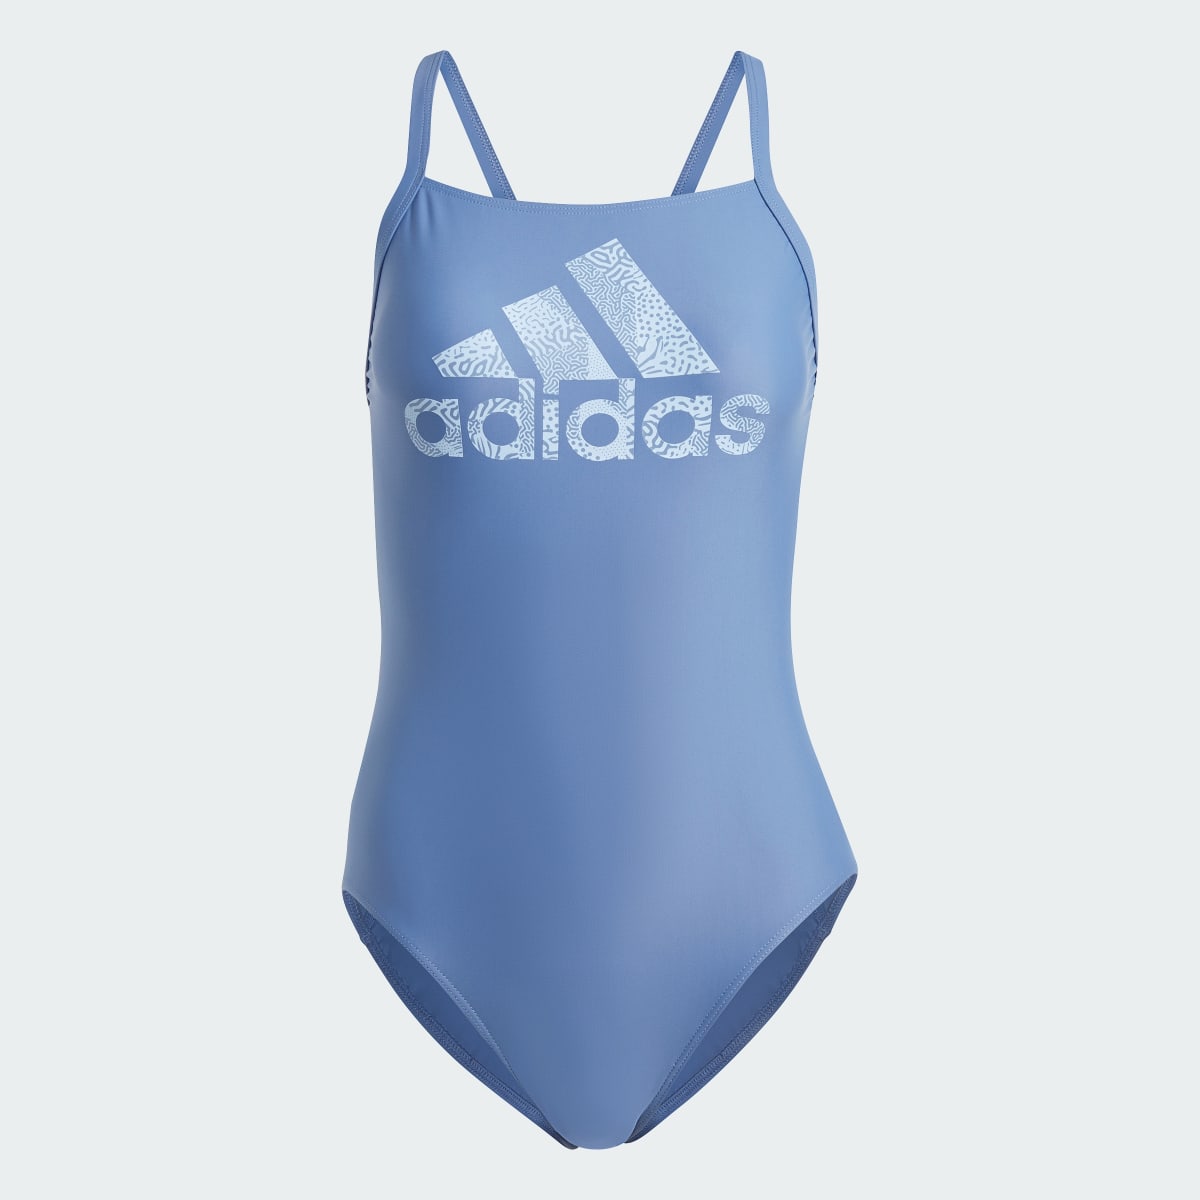 Adidas Big Logo Swimsuit. 5